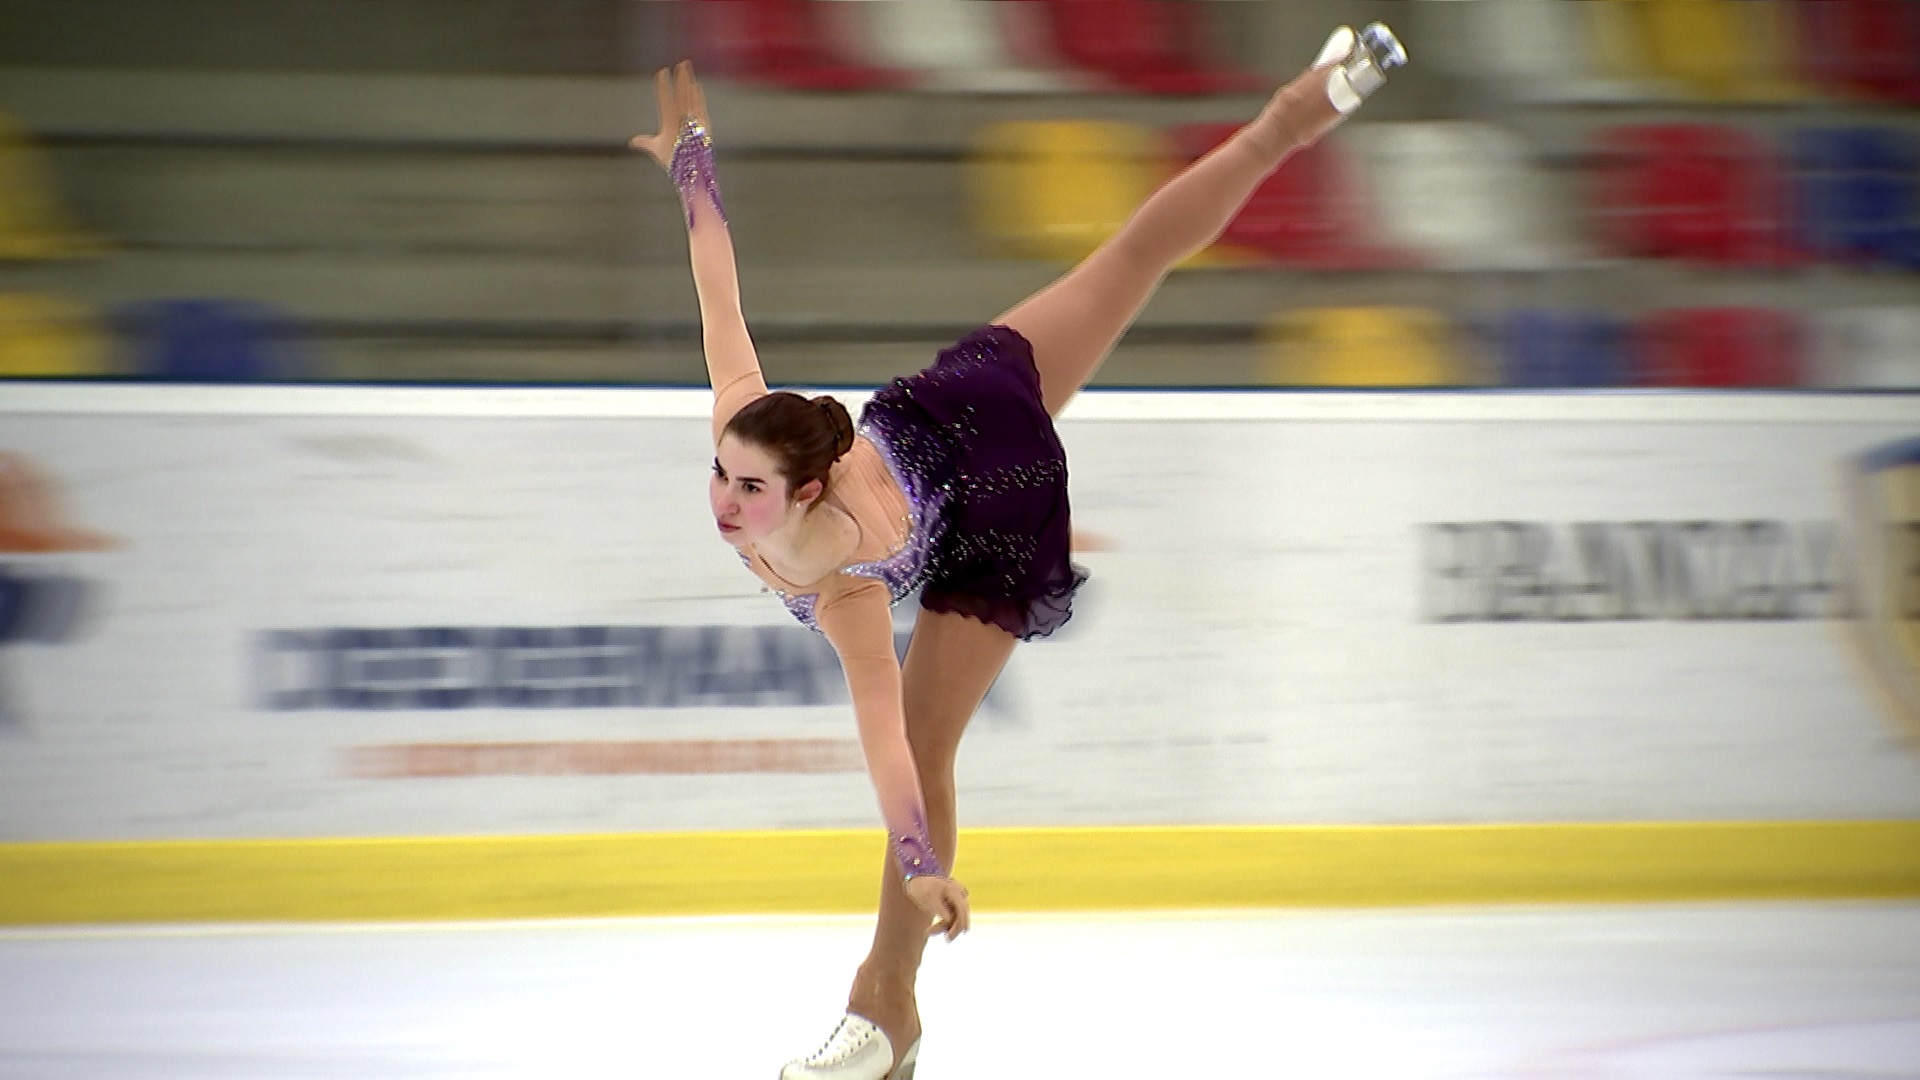 Avem viitor la patinaj! Ana Sofia visează să aducă primele medalii României la patinaj. Dancing on Ice-Vis în Doi e sâmbătă, ora 20:00, Antena 1